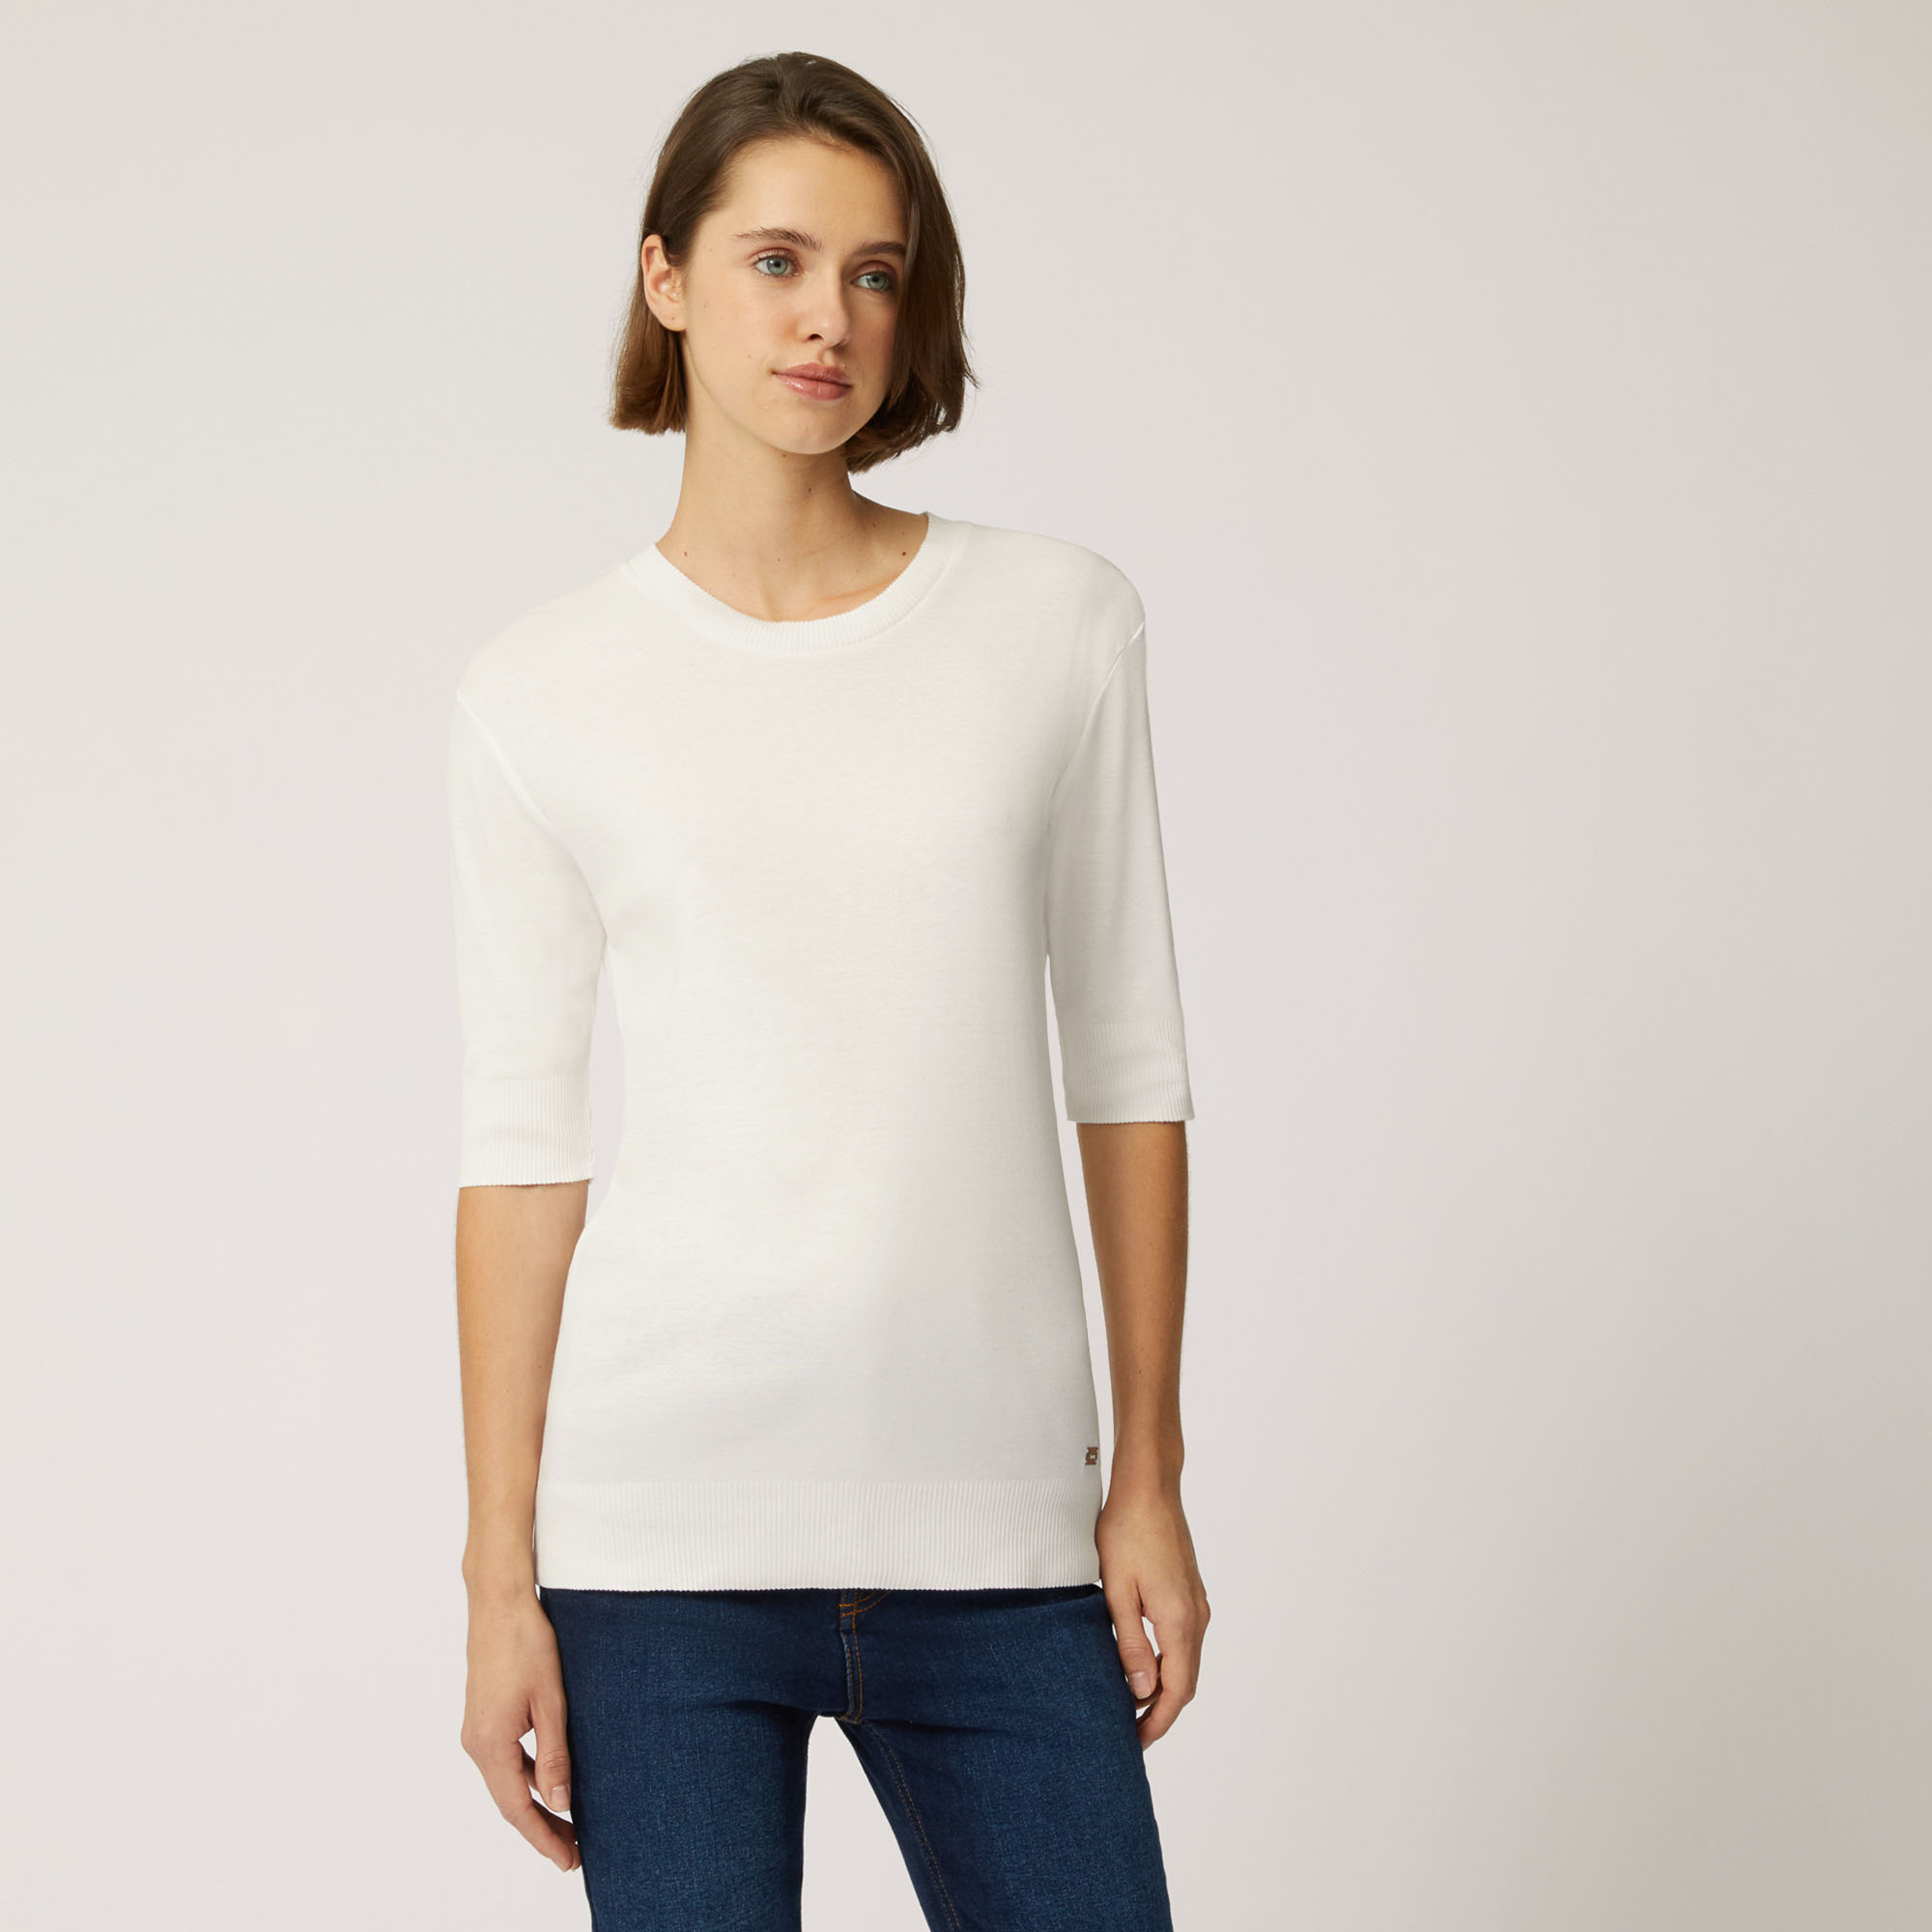 T-Shirt In Cotone E Modal Con Maniche A Tre Quarti, Bianco, large